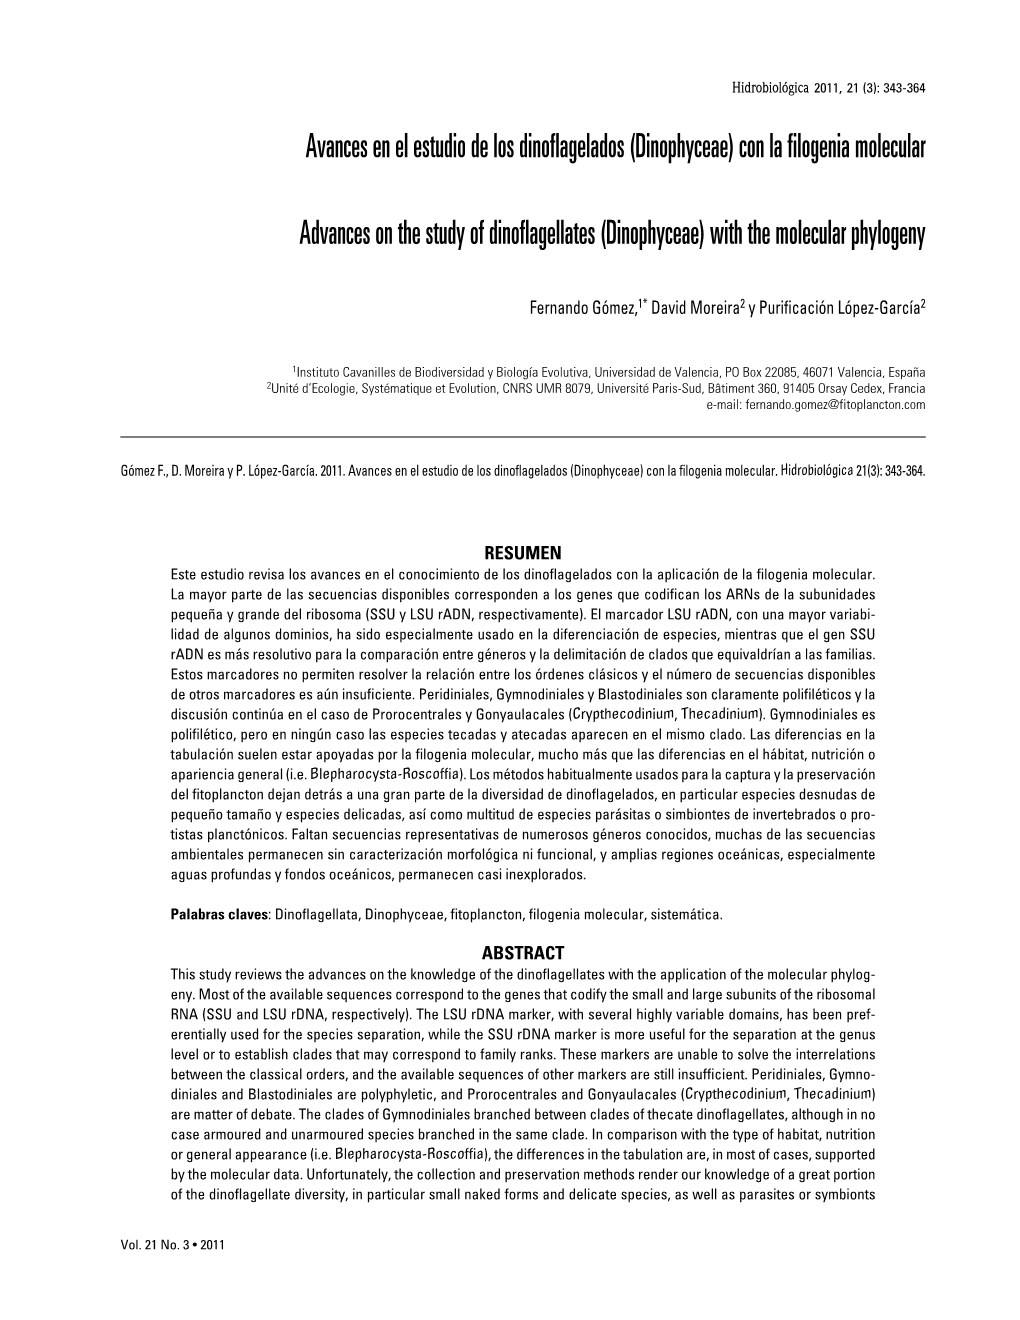 Avances En El Estudio De Los Dinoflagelados (Dinophyceae) Con La Filogenia Molecular